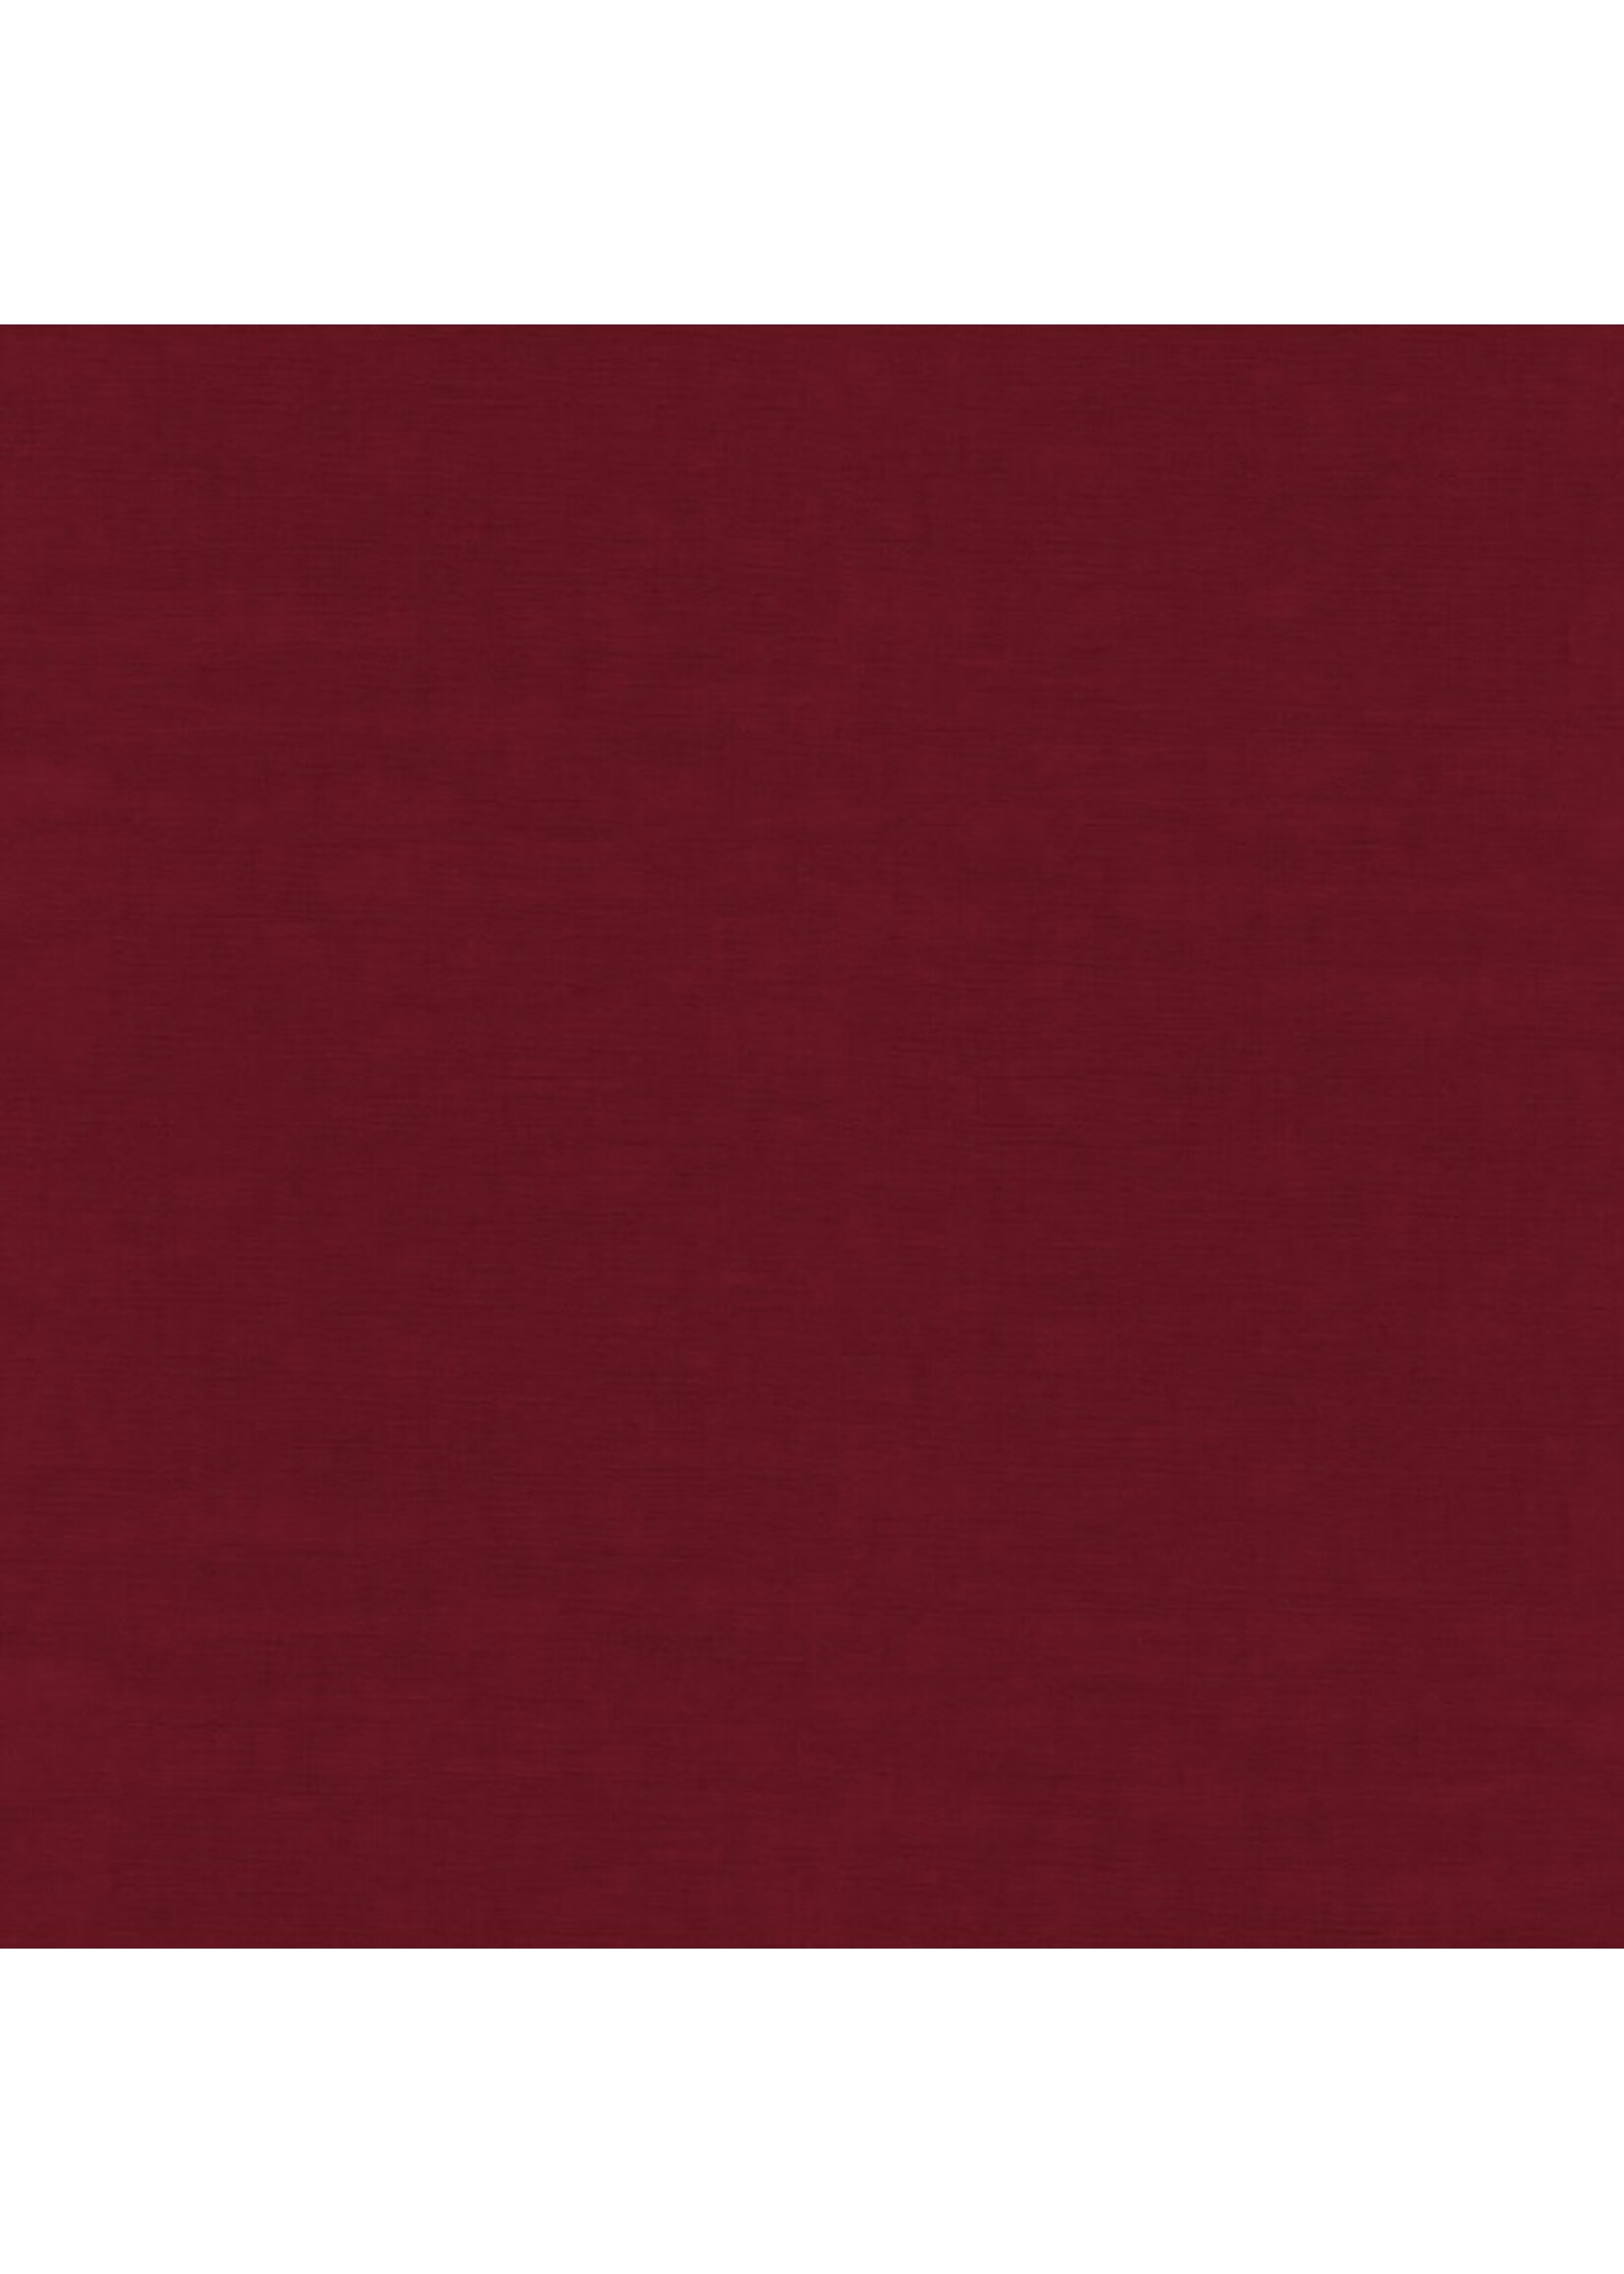 Makower Linen Texture - Cardinal - 1473R7